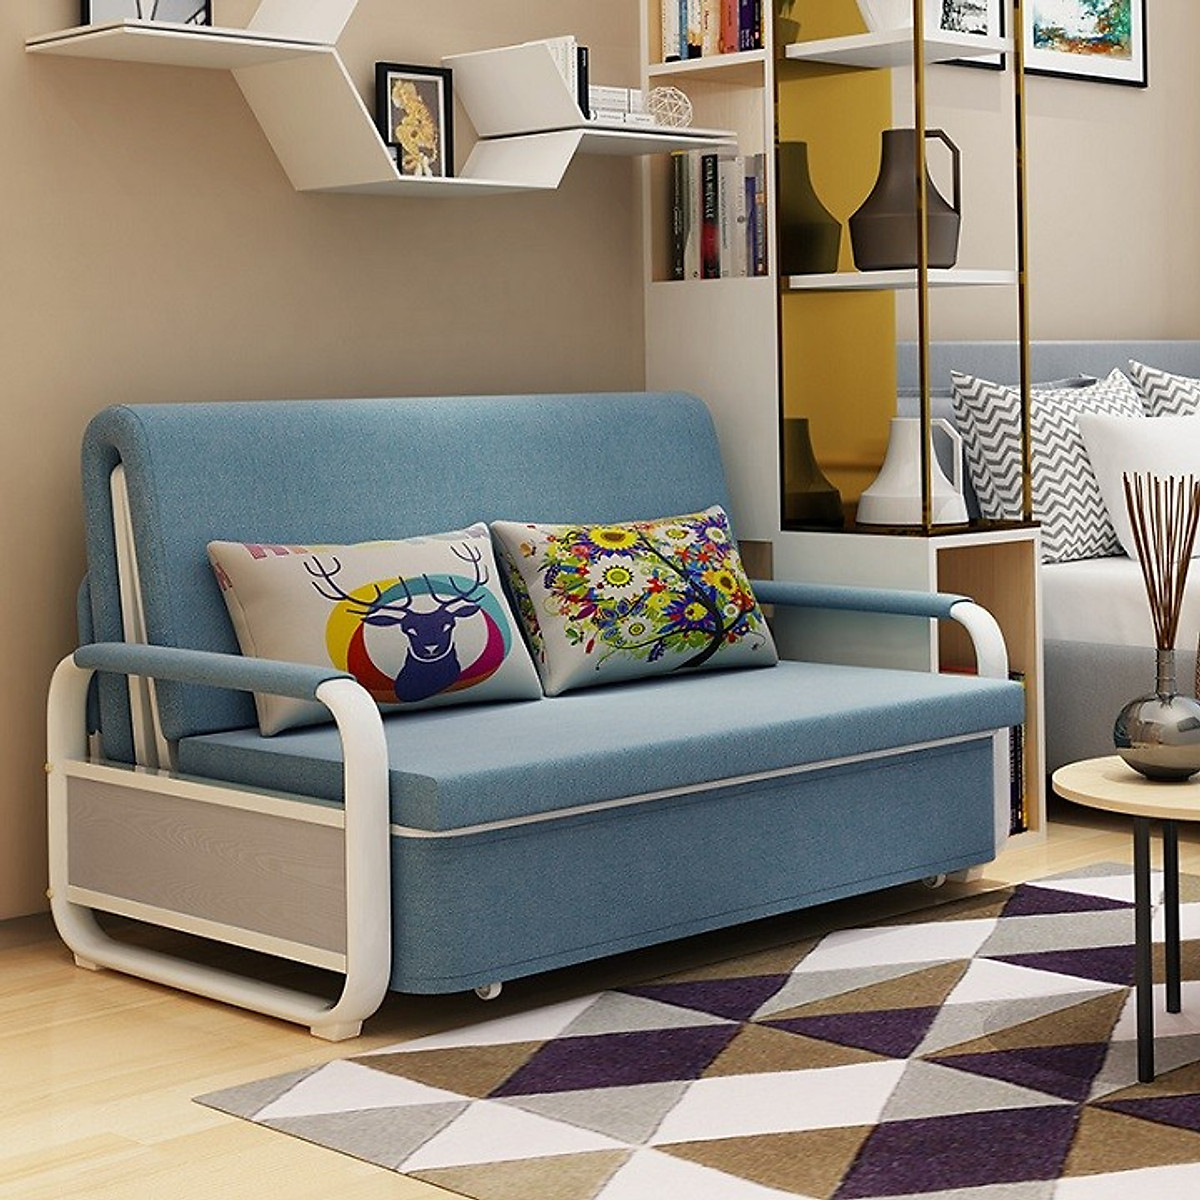 Sofa giường thông minh là món đồ nội thất thông minh đem lại nhiều lợi ích thiết thực cho không gian nhỏ